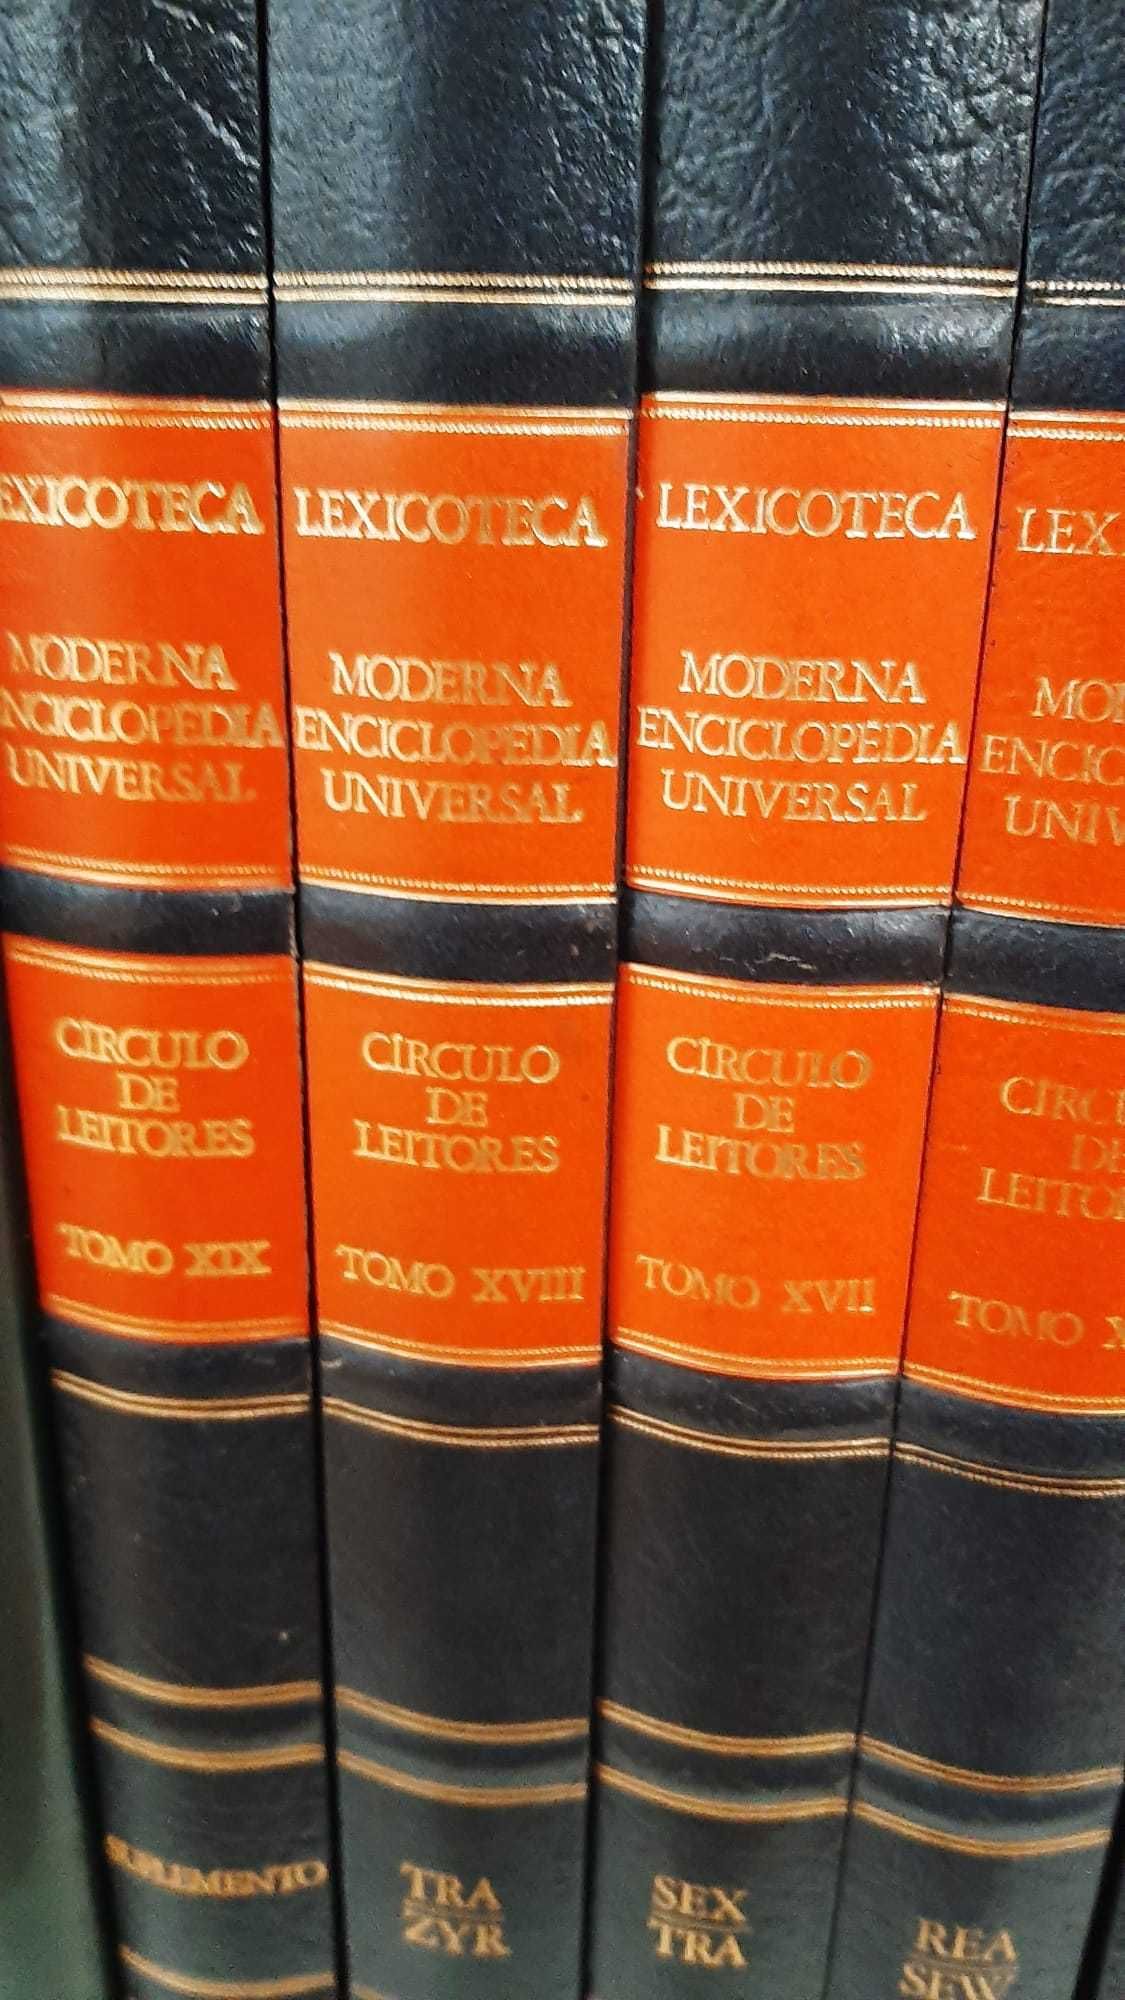 Lexicoteca - Moderna Enciclopédia Universal (Círculo de Leitores)